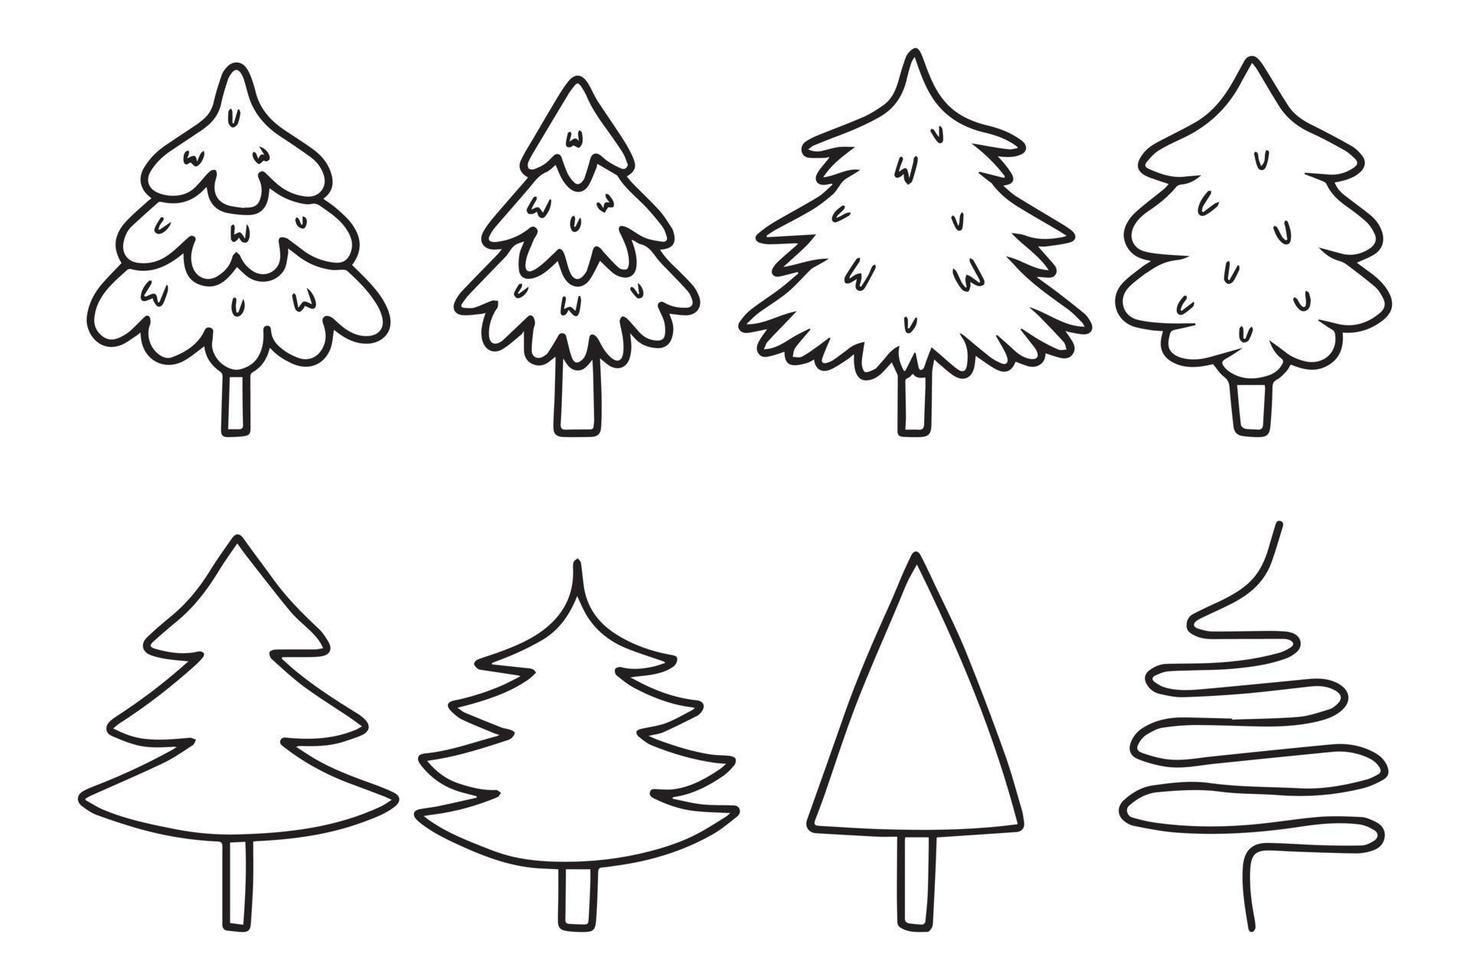 impostato di Natale albero nel scarabocchio stile. vettore illustrazione.